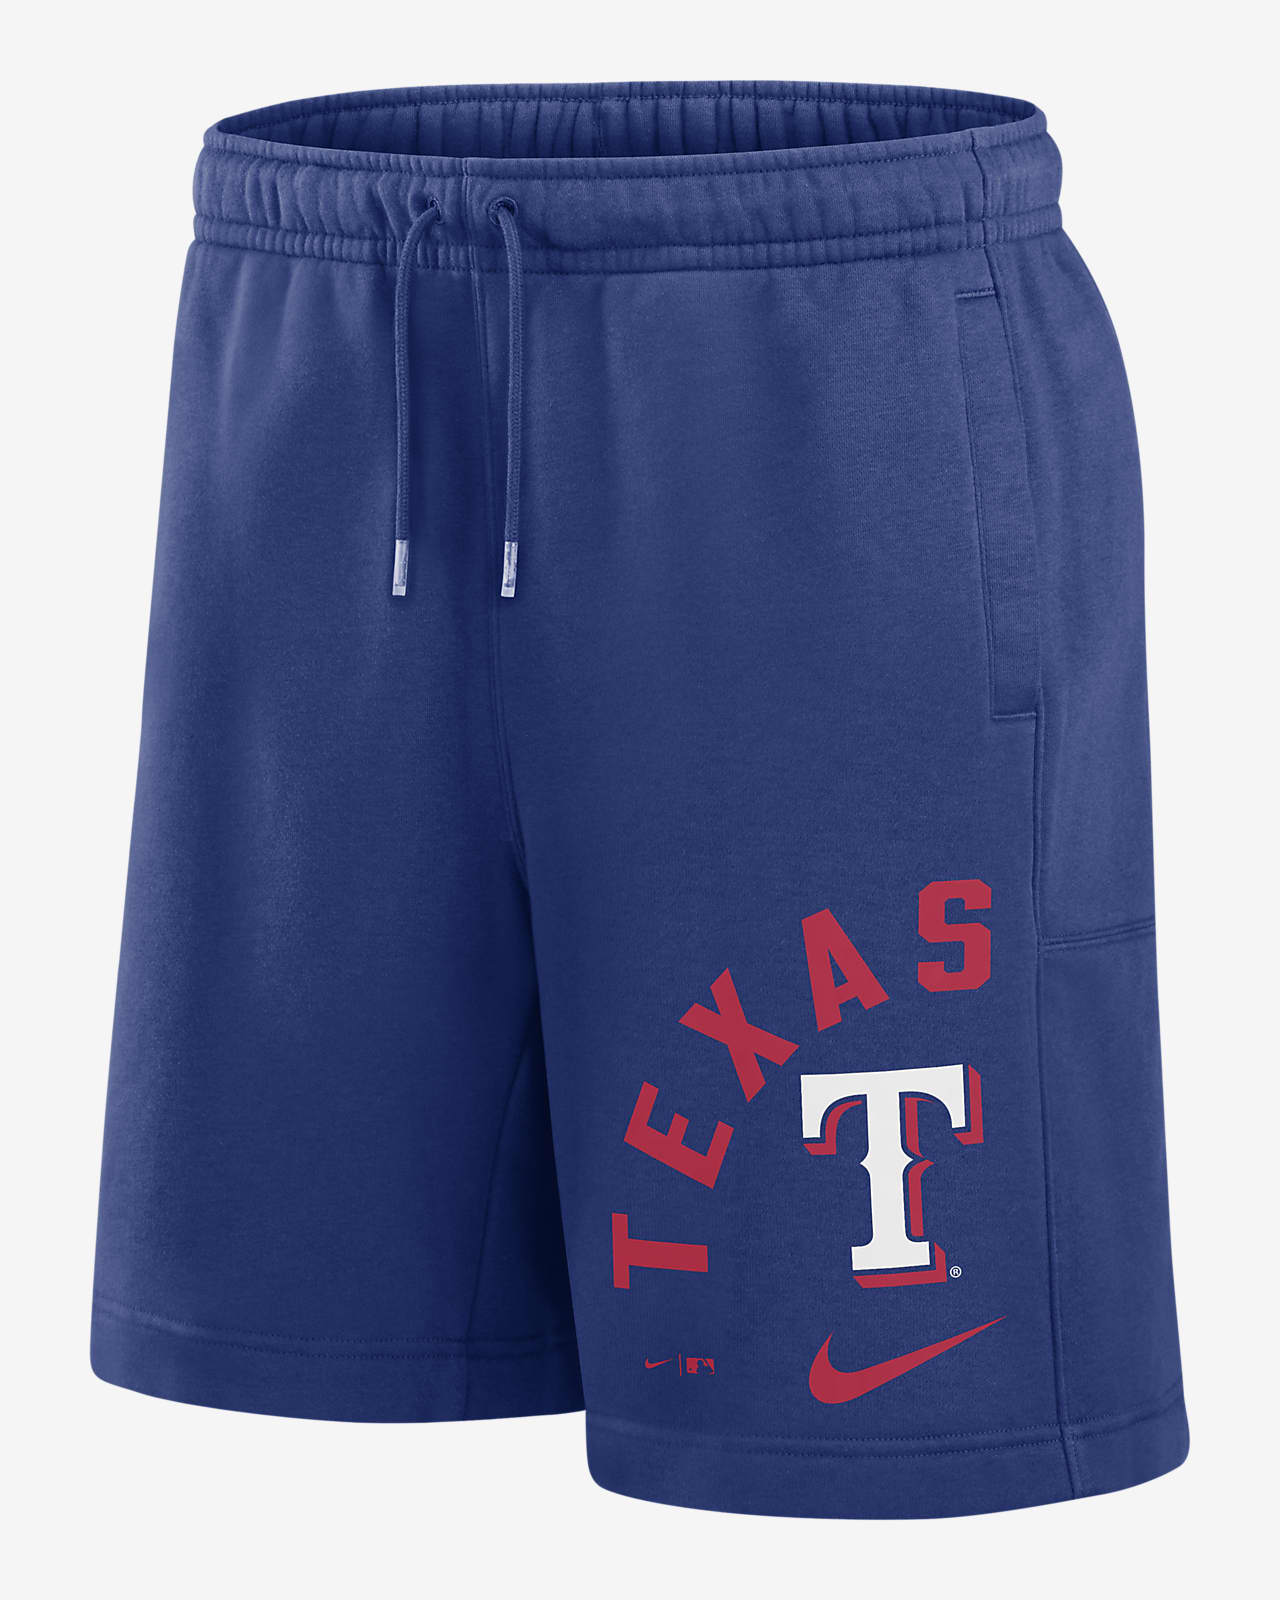 Shorts Nike de la MLB para hombre Texas Rangers Arched Kicker